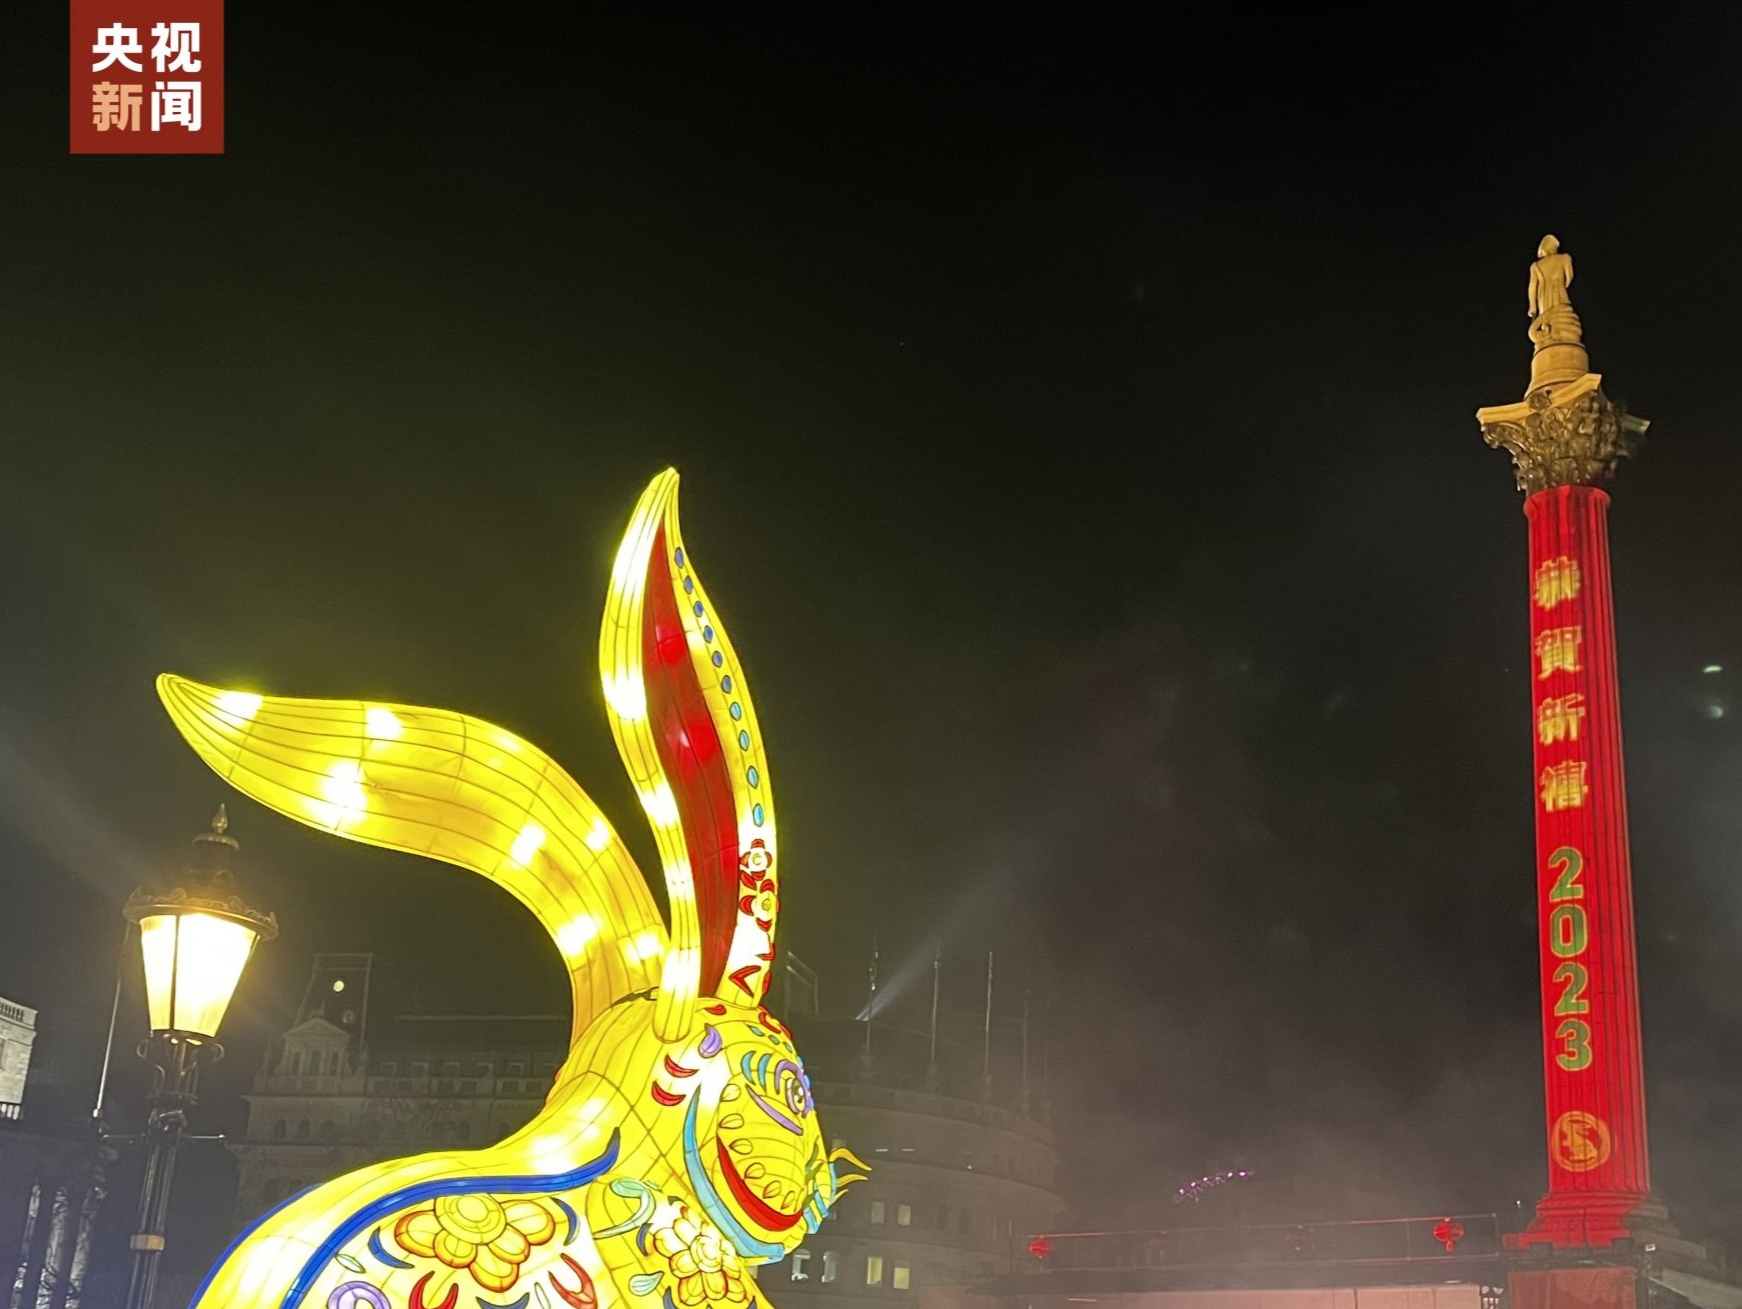 喜迎兔年新春 英国伦敦特拉法加广场亮起“中国红”